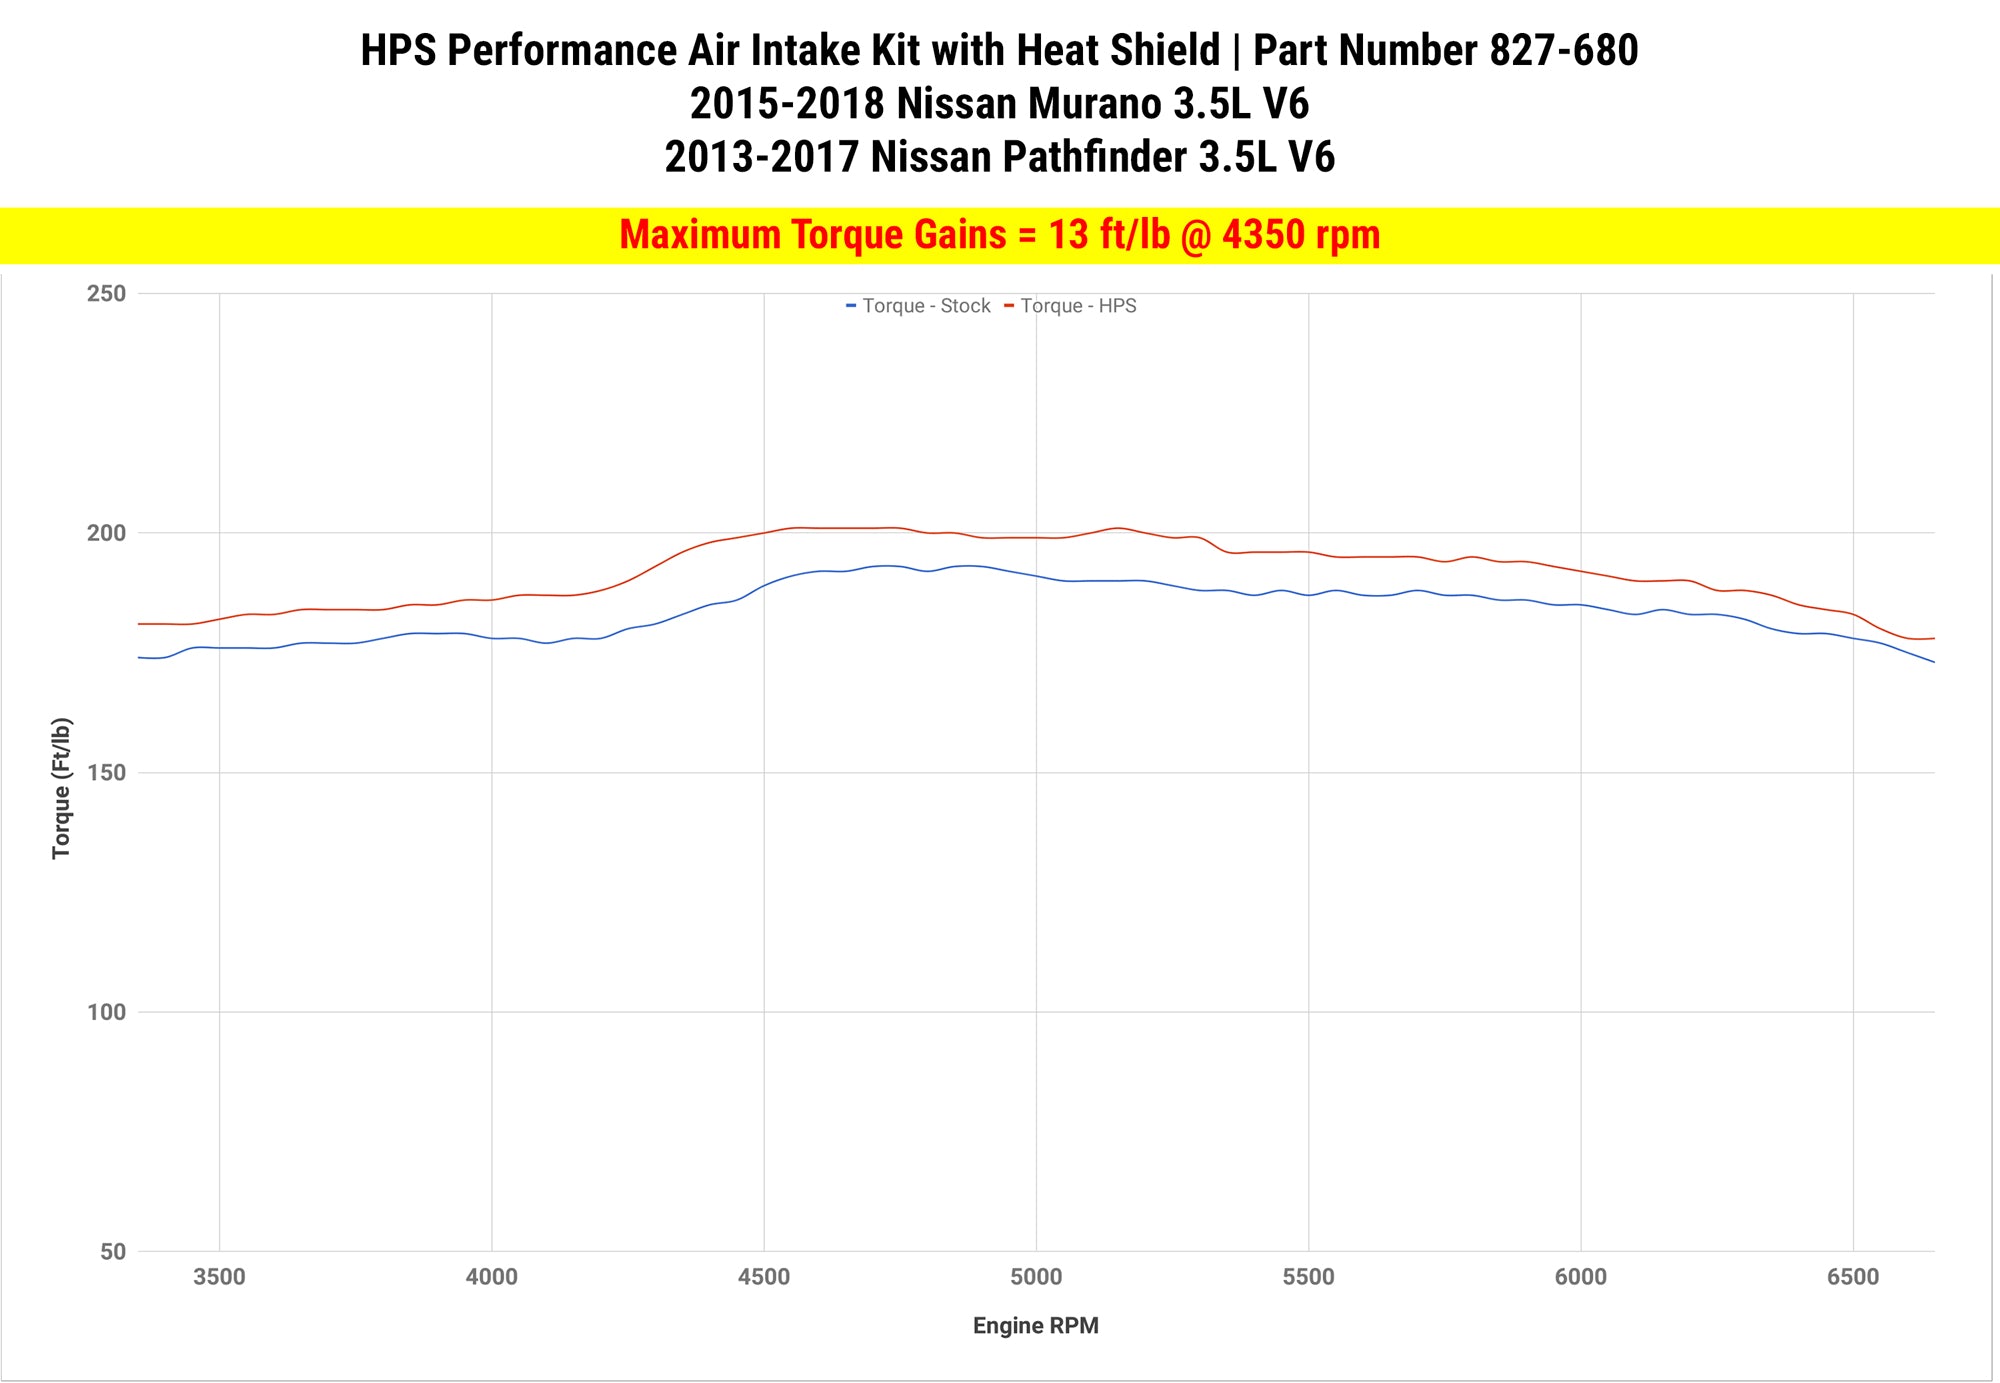 Dyno proven gains 13 ft/lb HPS Performance Shortram Air Intake Kit 2013-2017 Nissan Pathfinder 3.5L V6 827-680R